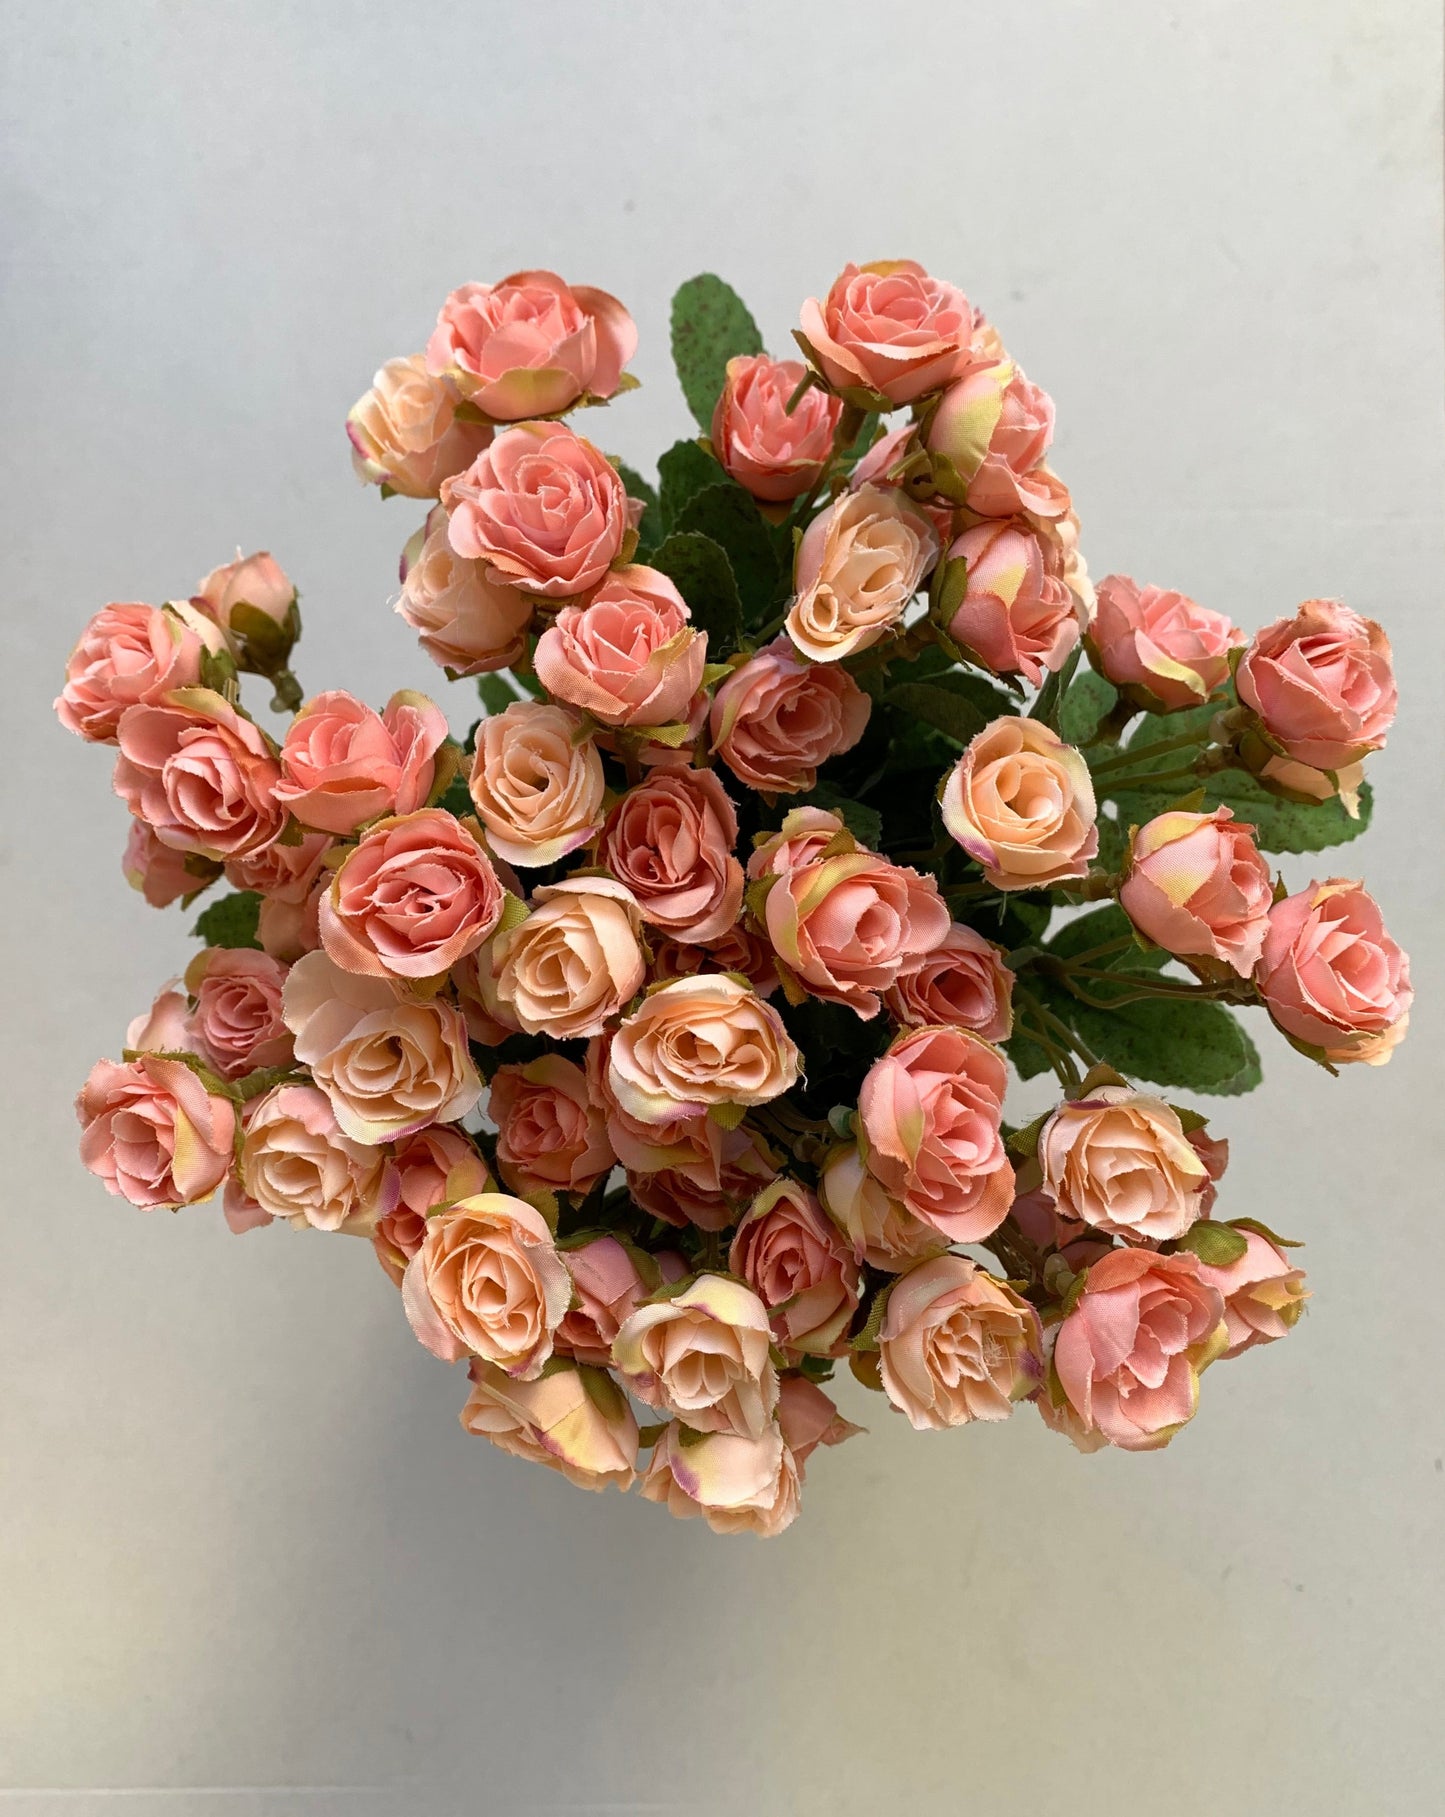 Apró rózsa művirág csokor - barack